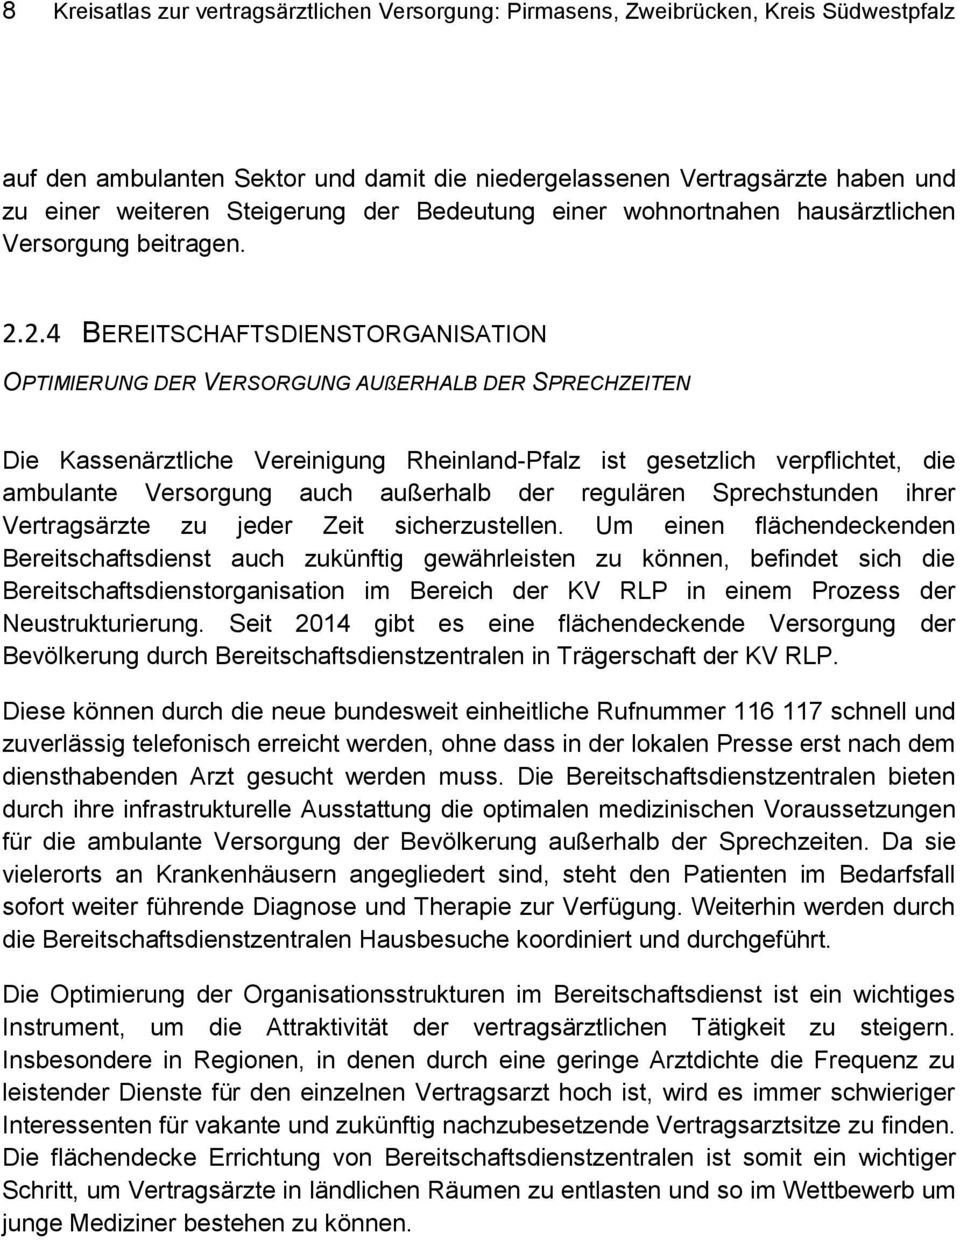 2.4 BEREITSCHAFTSDIENSTORGANISATION OPTIMIERUNG DER VERSORGUNG AUßERHALB DER SPRECHZEITEN Die Kassenärztliche Vereinigung Rheinland-Pfalz ist gesetzlich verpflichtet, die ambulante Versorgung auch